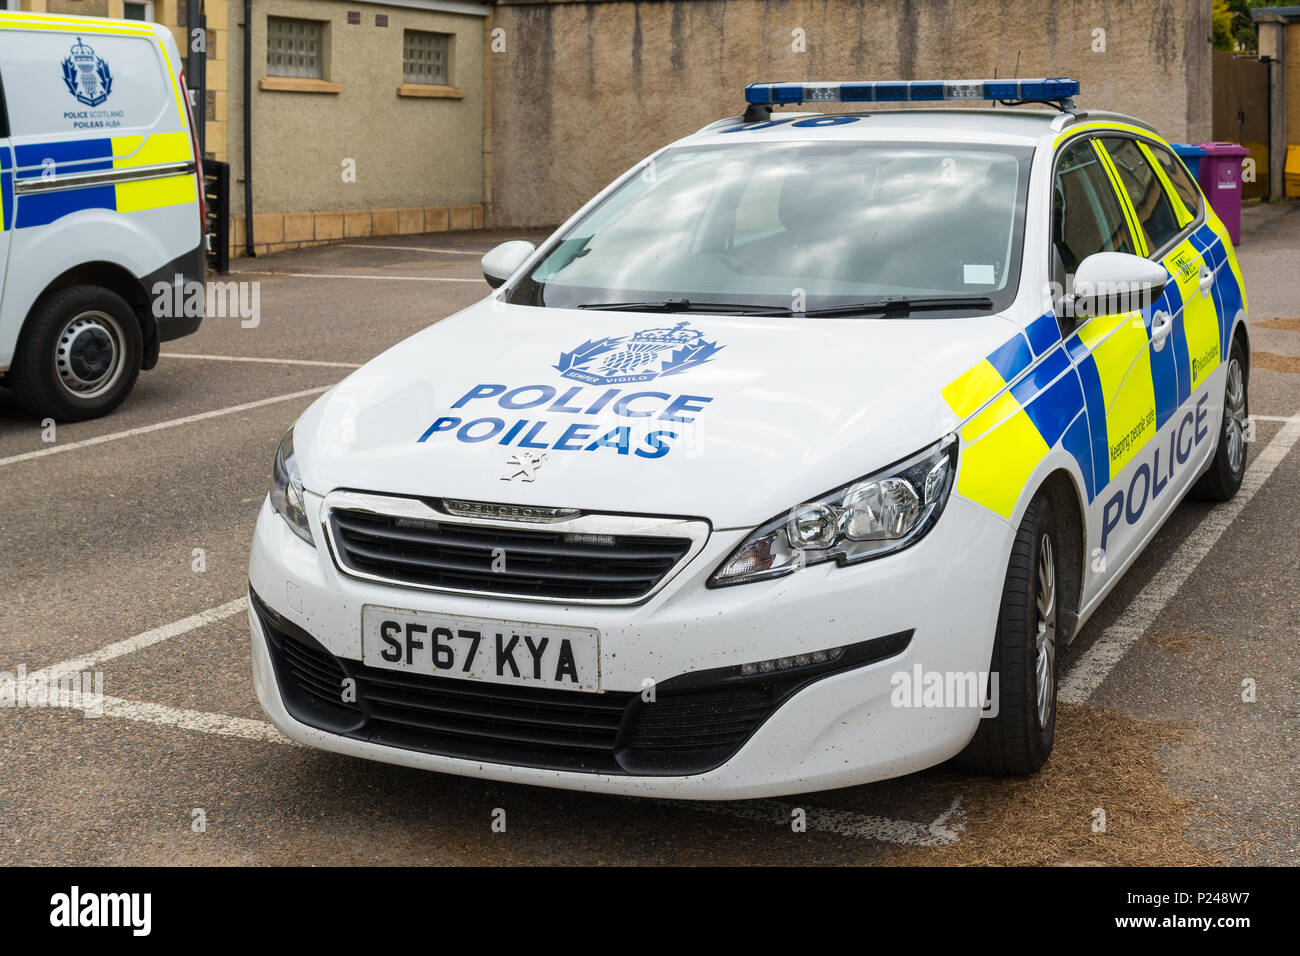 Polizei Schottland Polizei Auto und melden Sie sich mit Name im Gälischen - Poileas Stockfoto